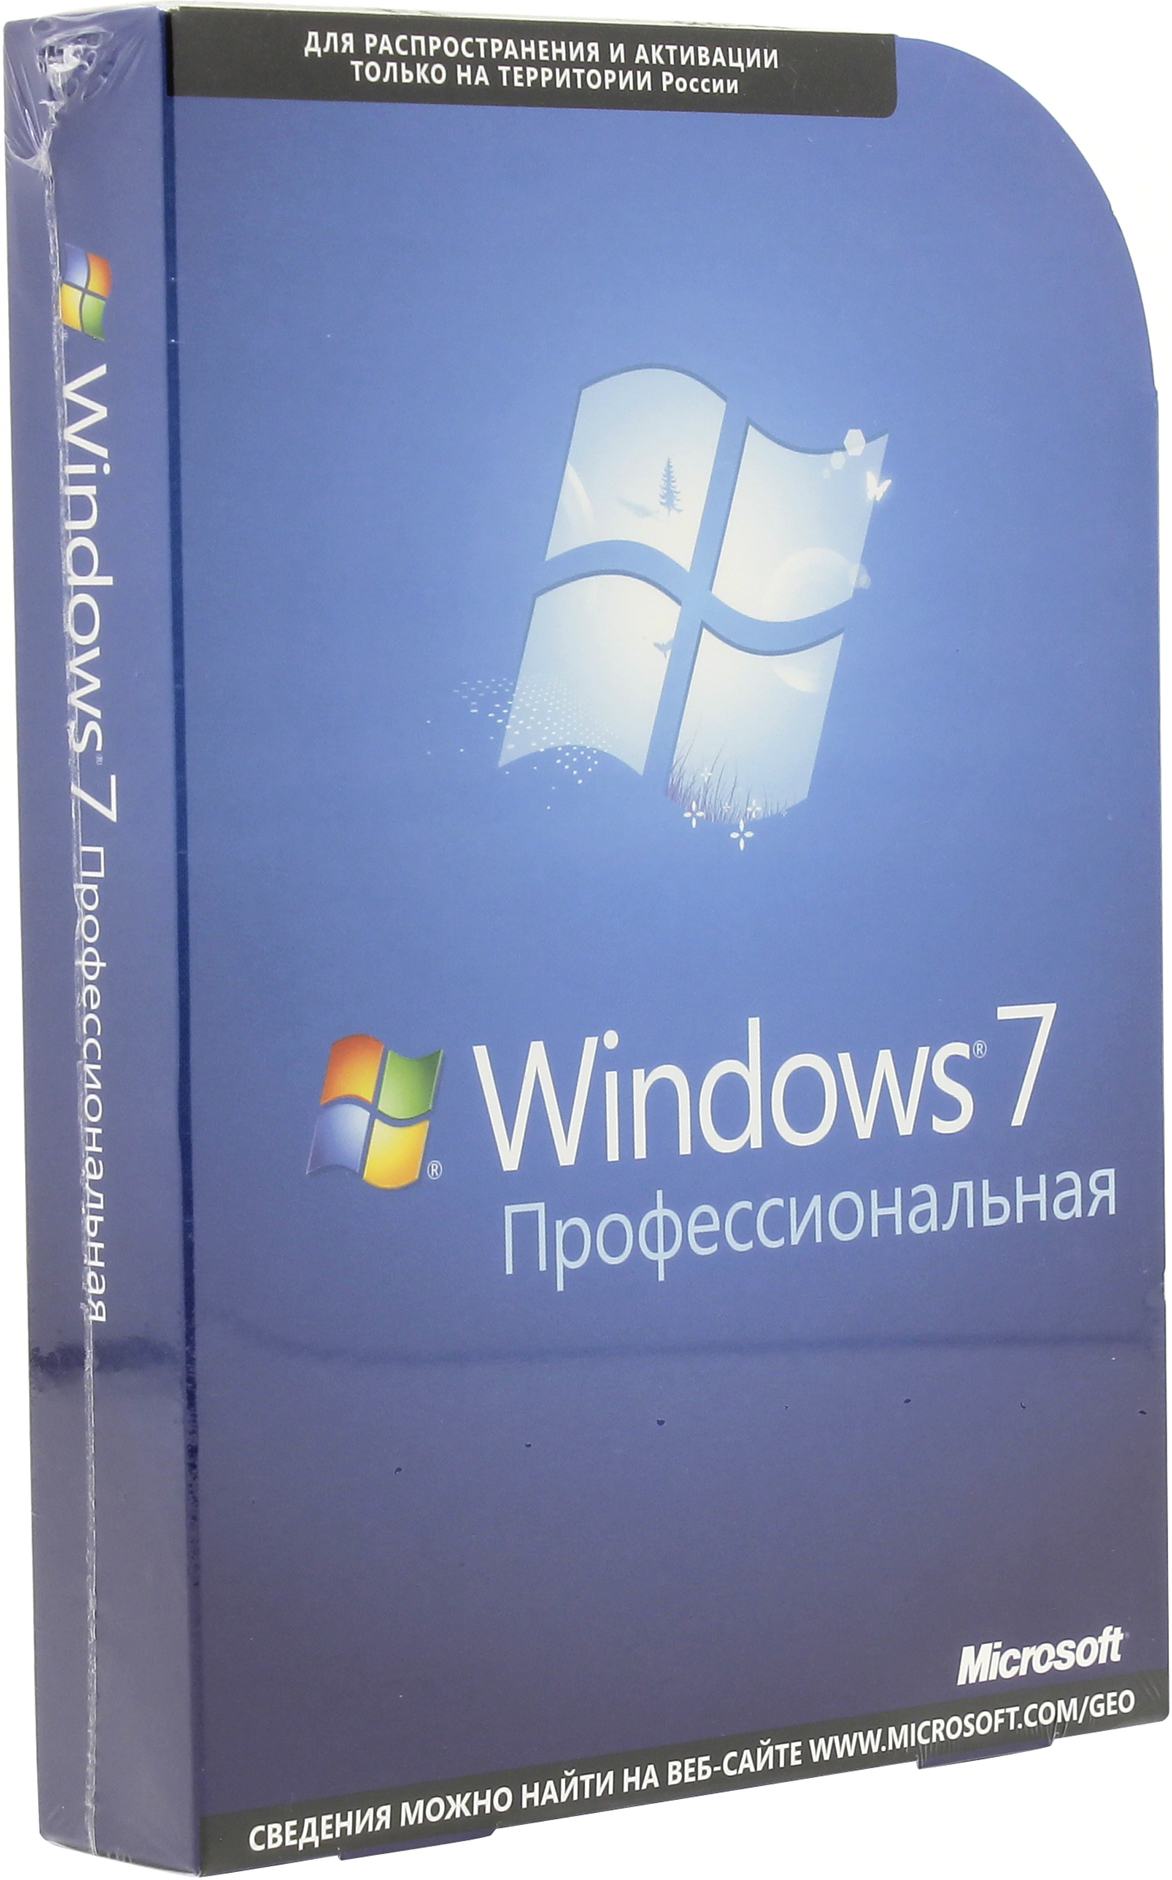 Купить Ноутбук С Windows 7 Professional